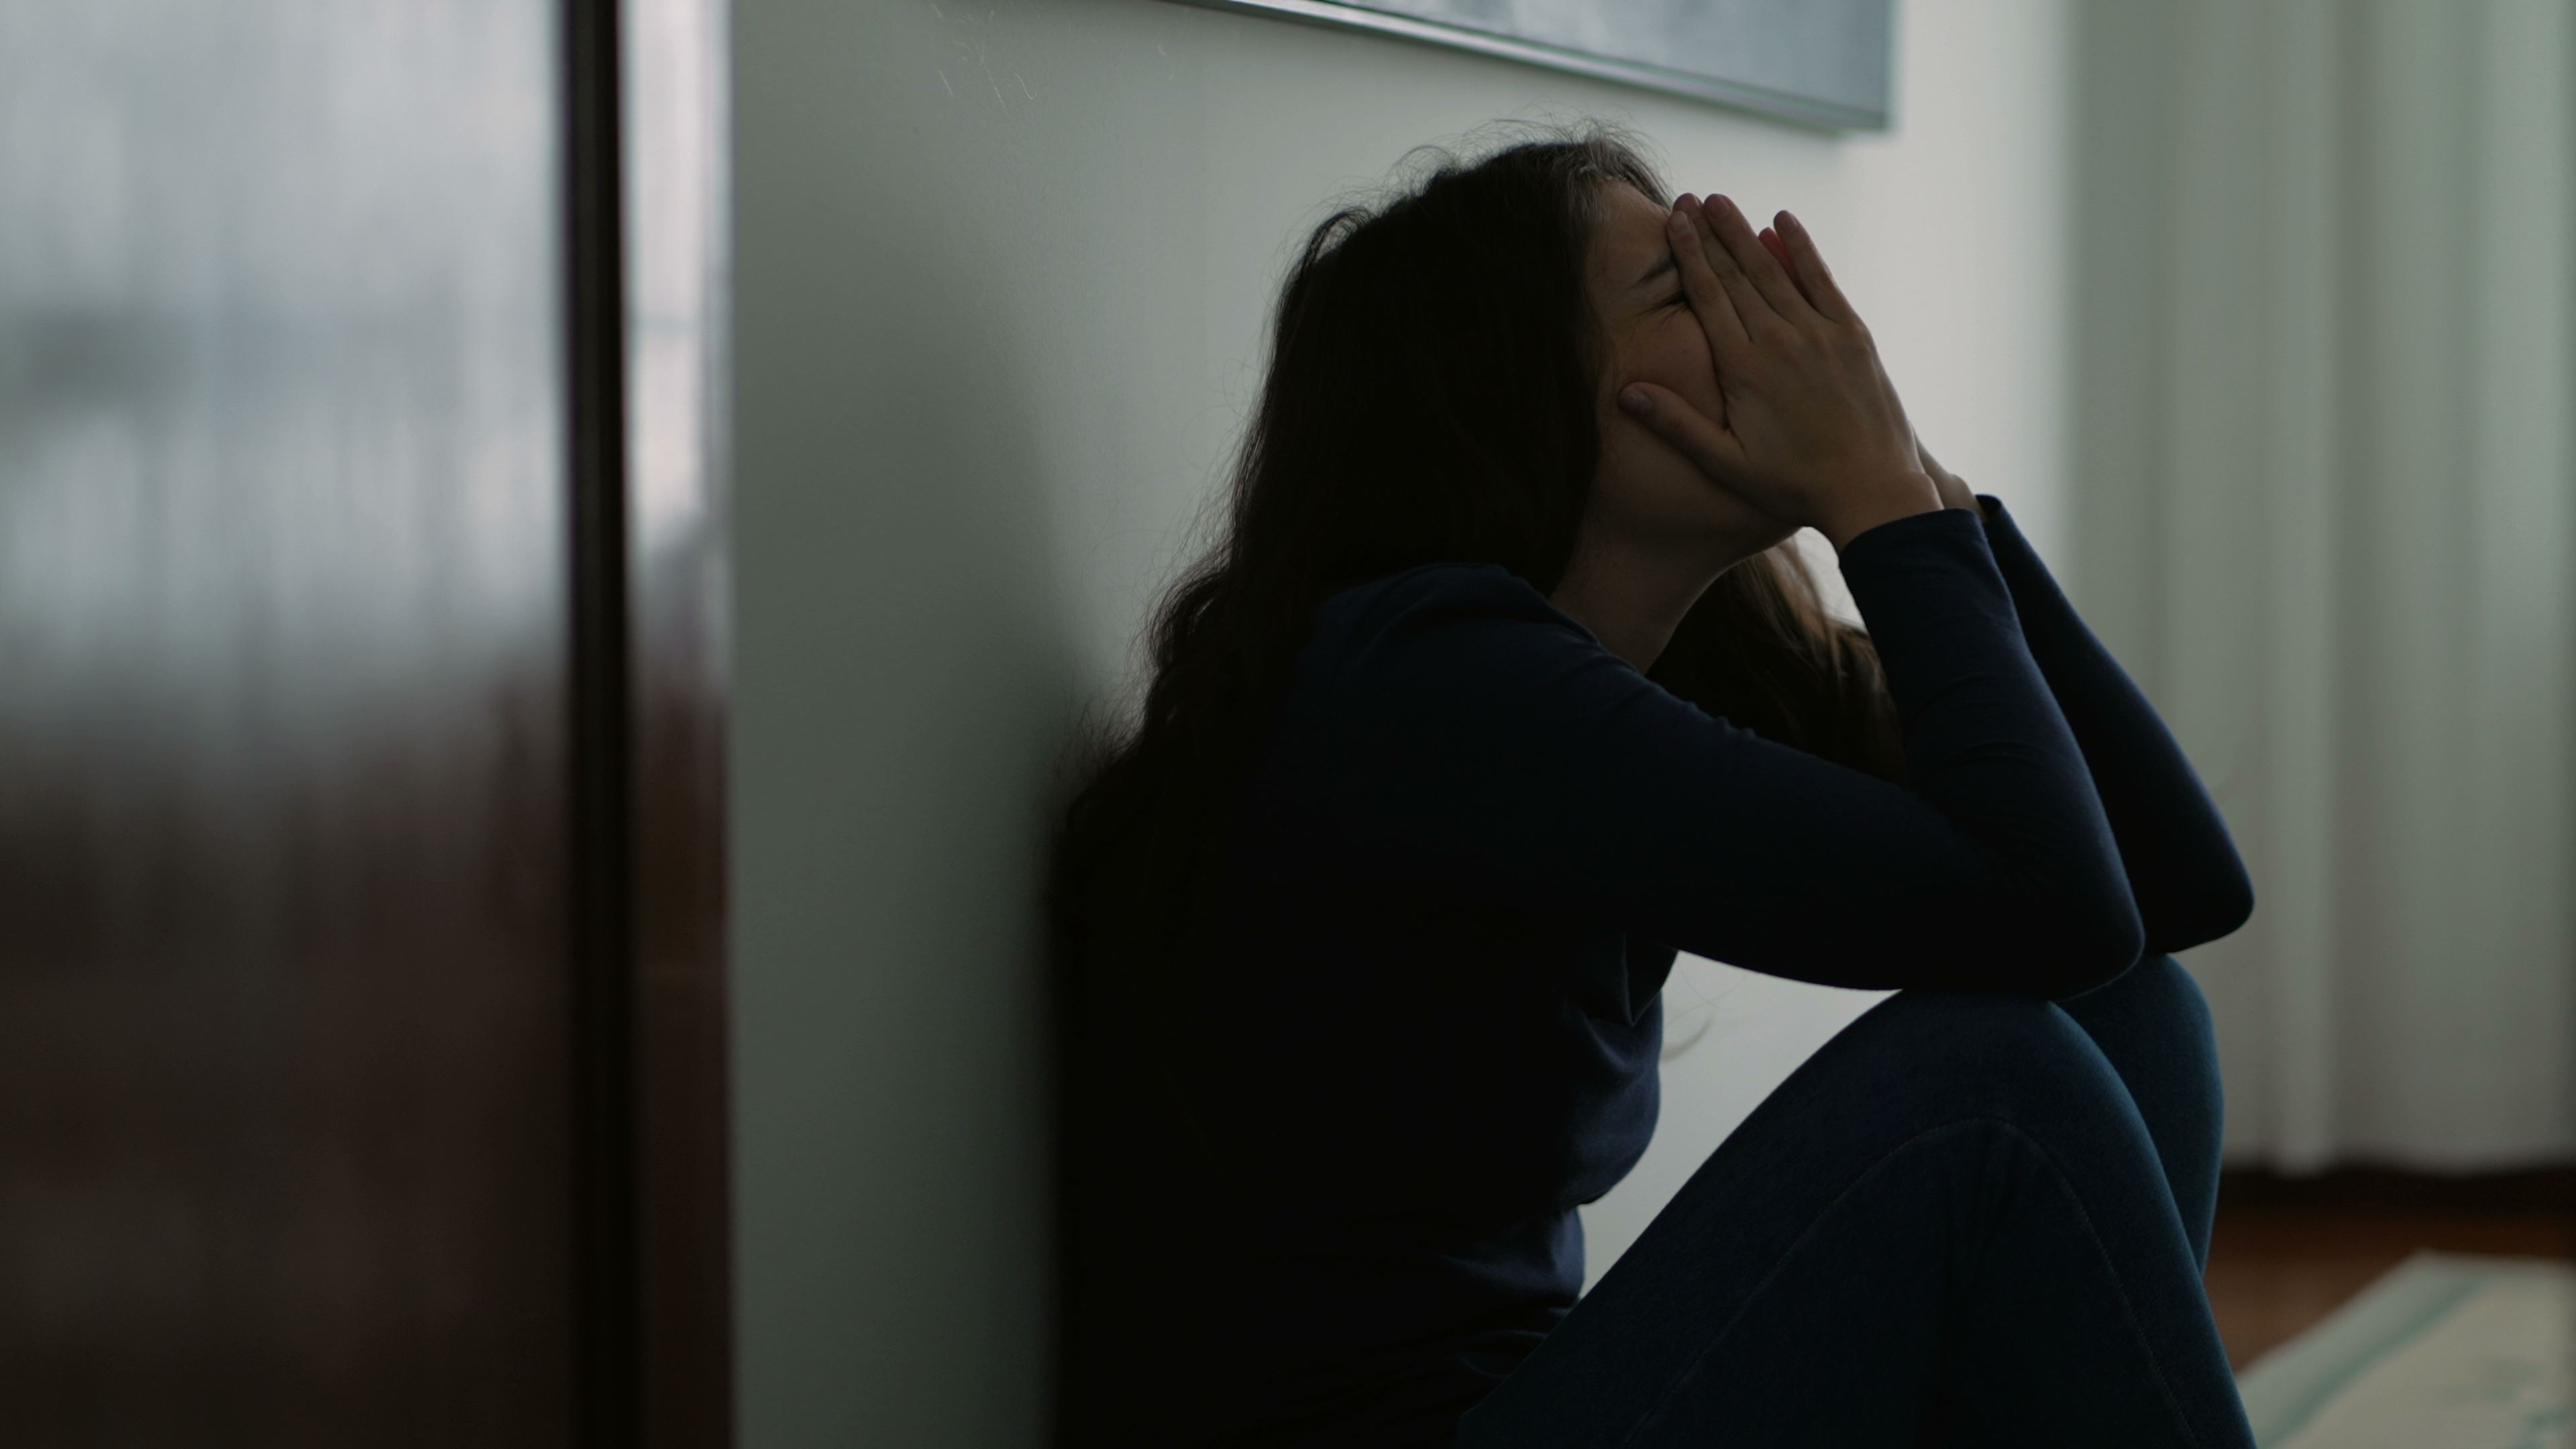 Mujer sintiendo dolor emocional | Fuente: Shutterstock